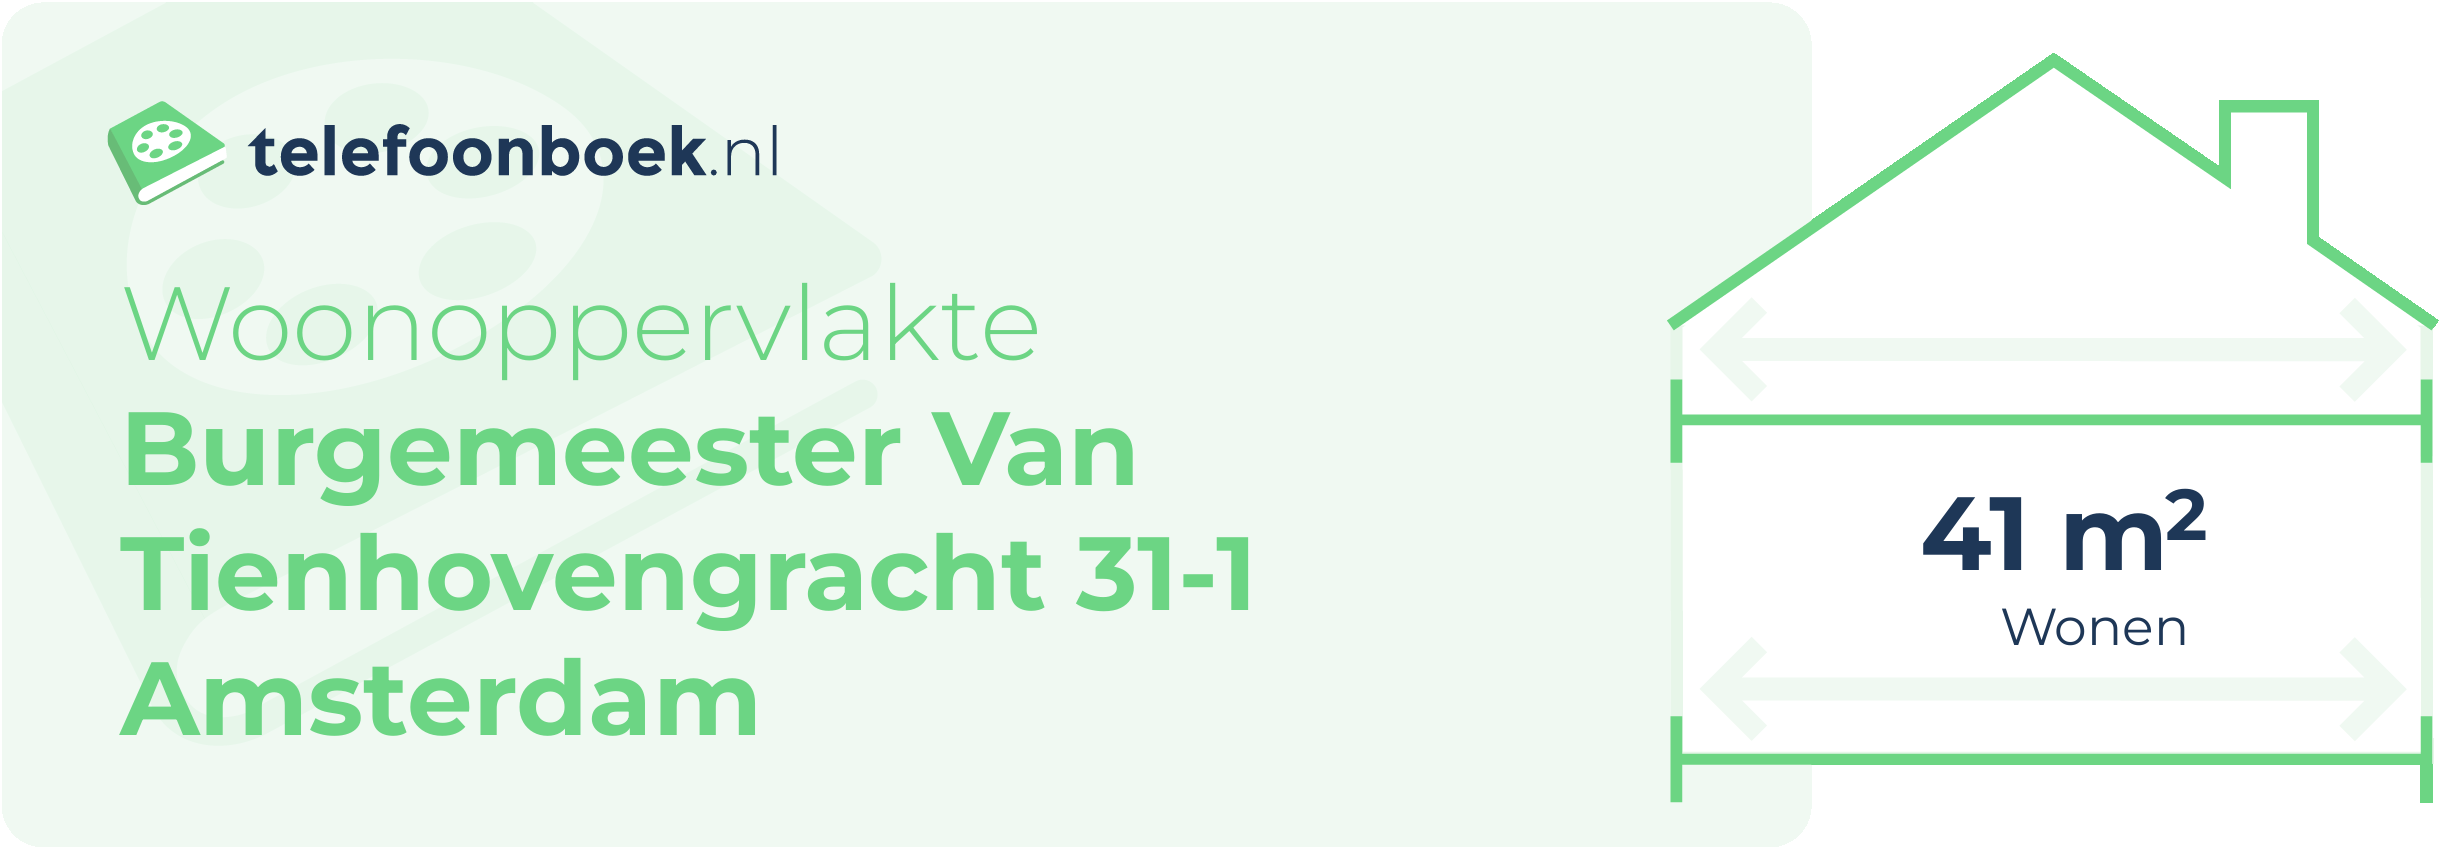 Woonoppervlakte Burgemeester Van Tienhovengracht 31-1 Amsterdam